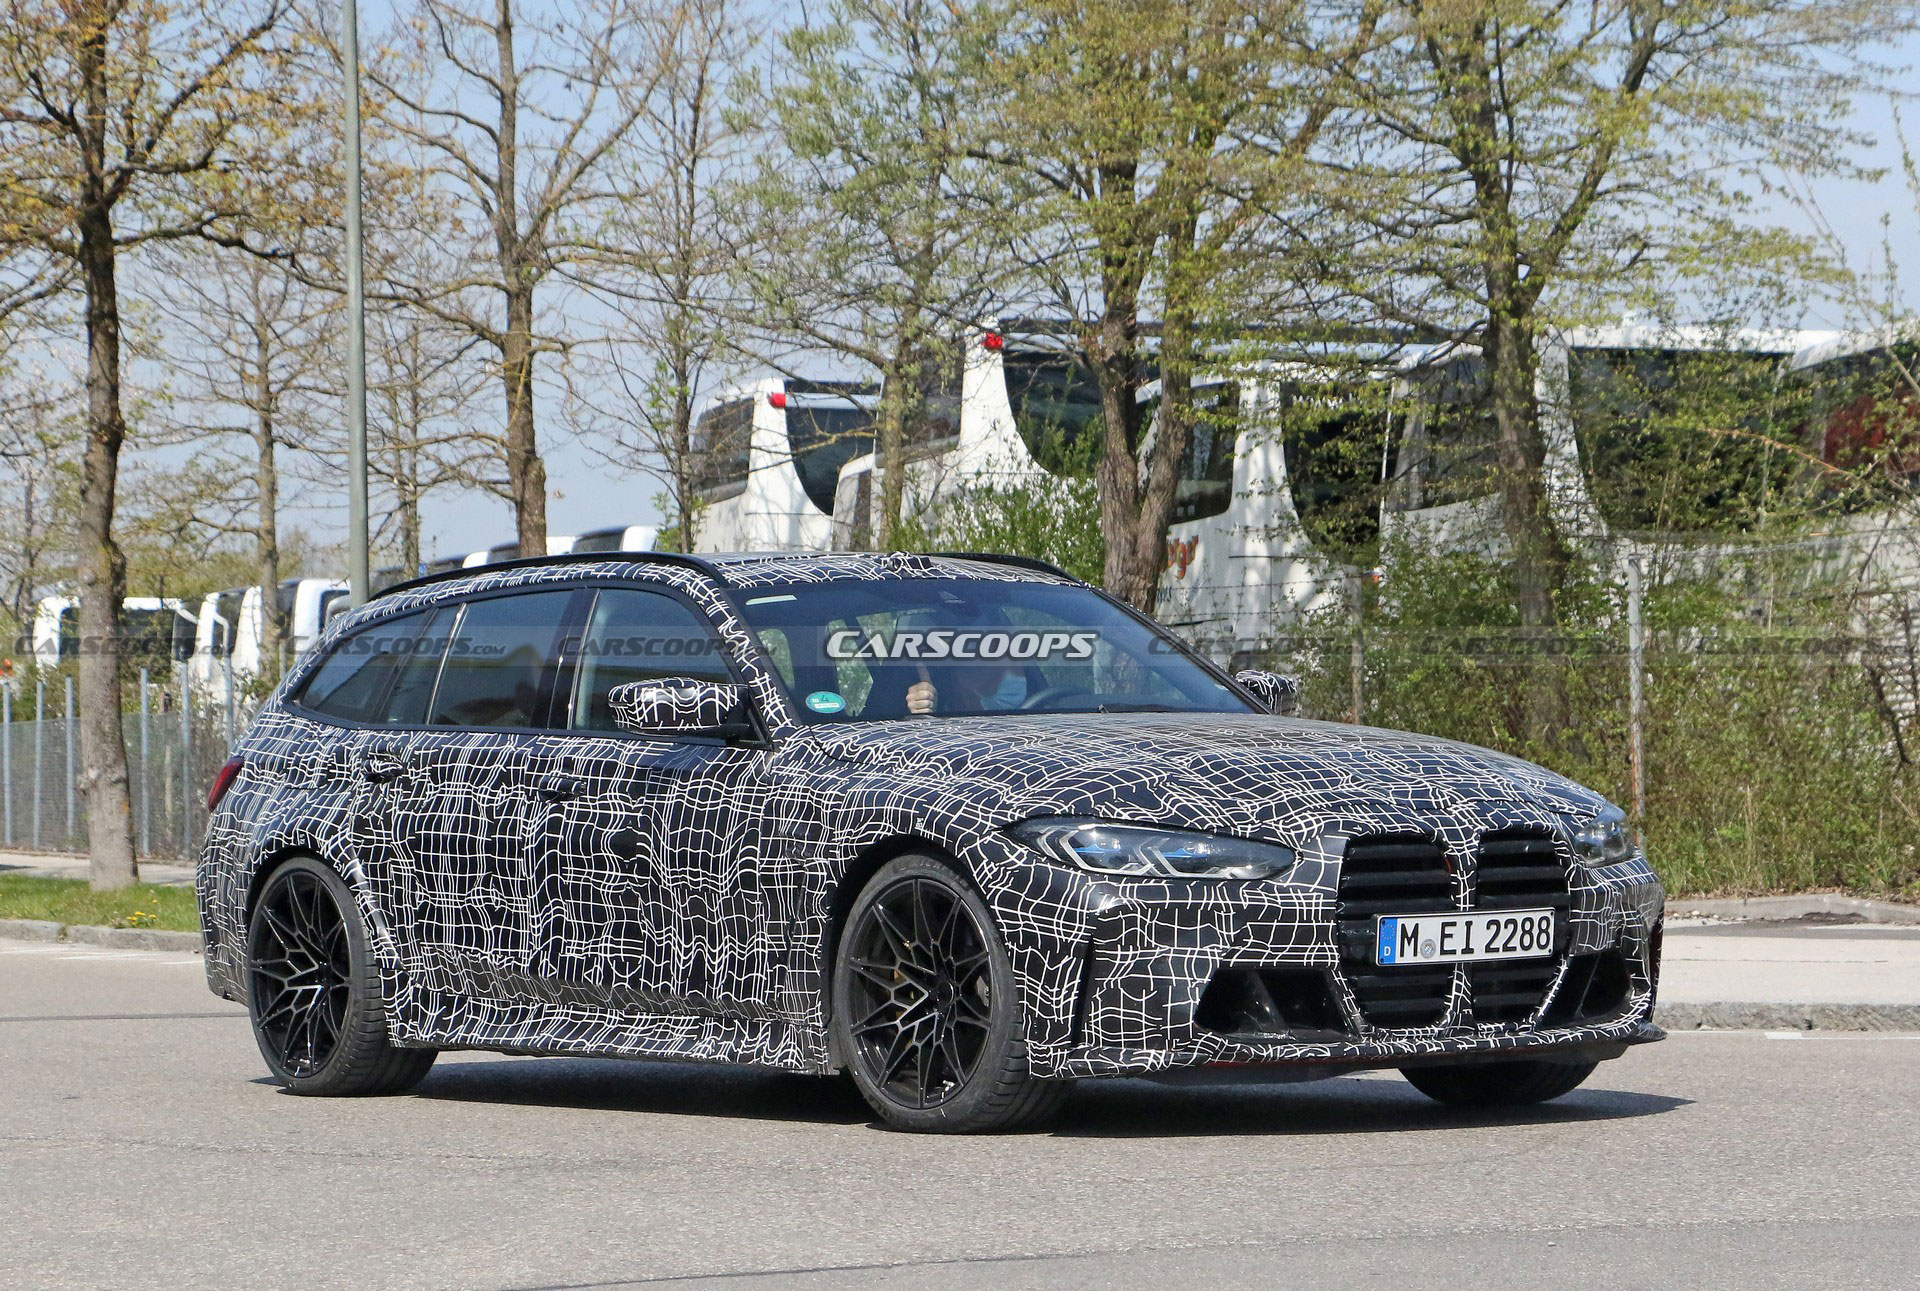 2022 BMW M3 Touring resim galerisi (27.05.2021)